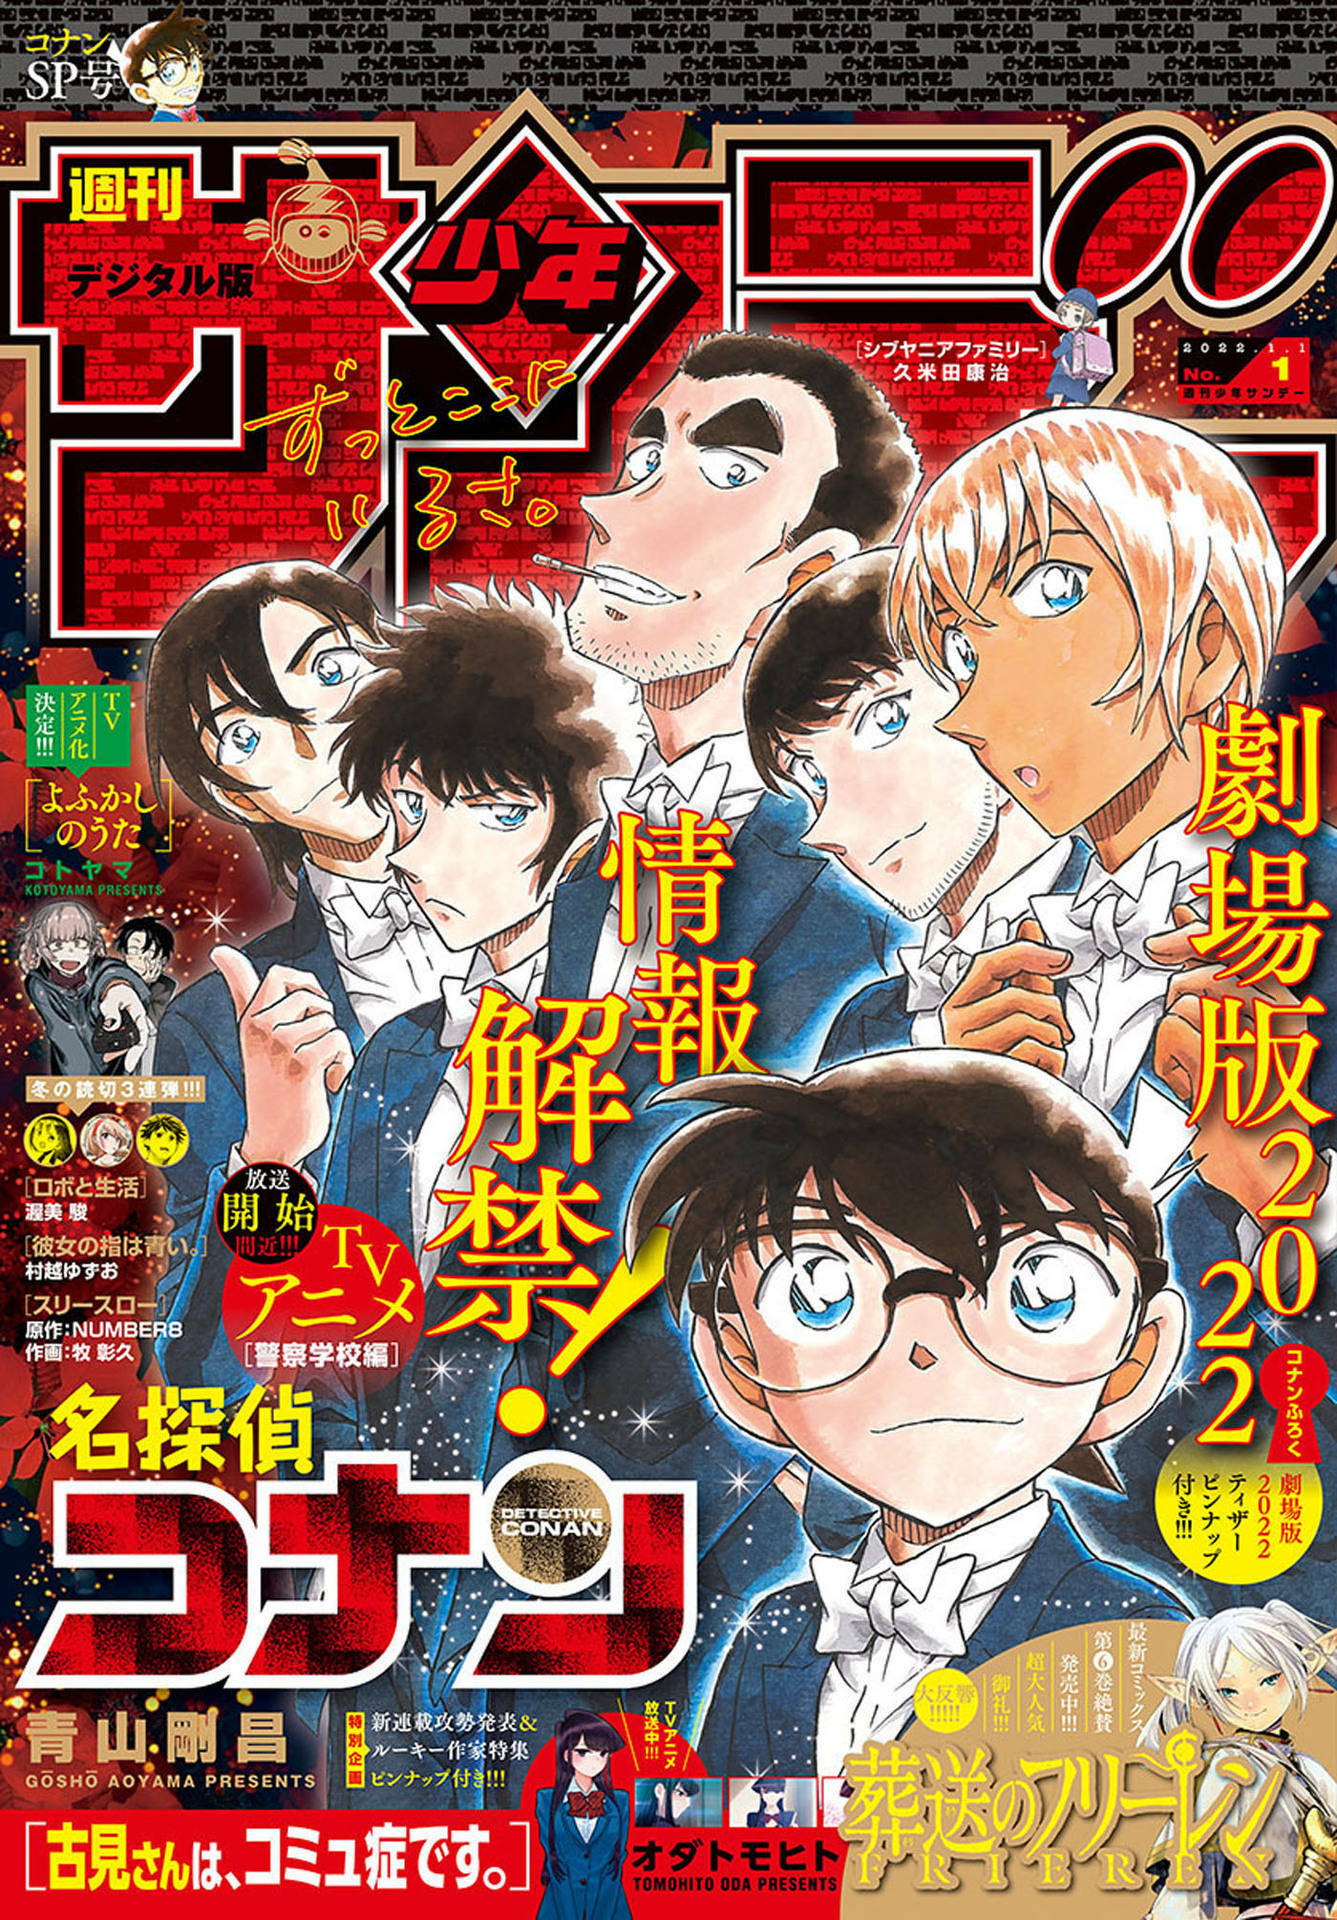 Yofukashi no Uta is on the cover of Weekly Shonen Sunday 2023